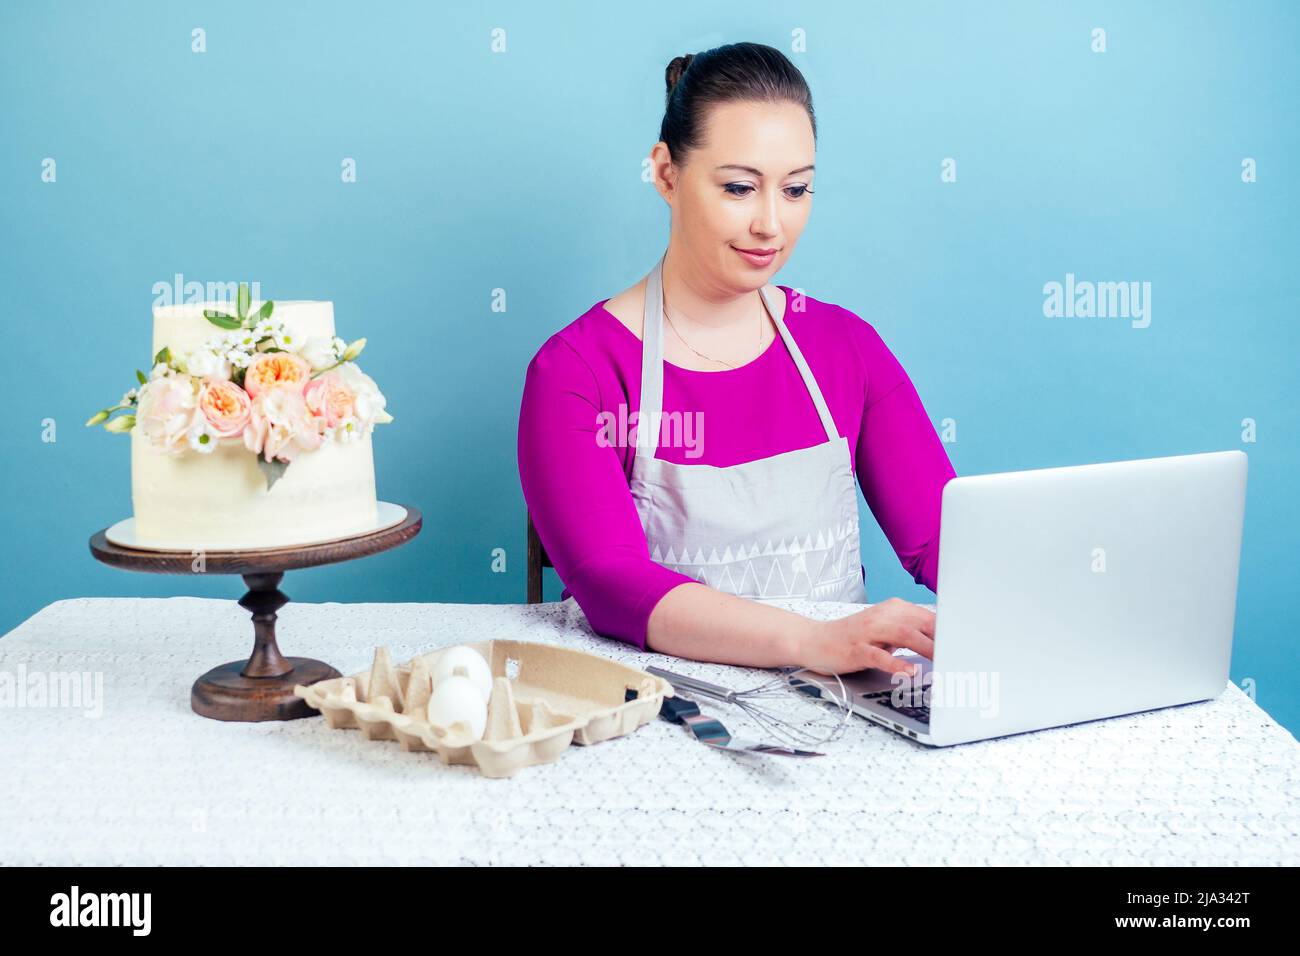 casalinga della pasticceria (pasticceria-cuoco) lavora con un computer portatile vicino alla torta bianca di nozze a due livelli con fiori freschi su un tavolo con una tovaglia di pizzo in Foto Stock